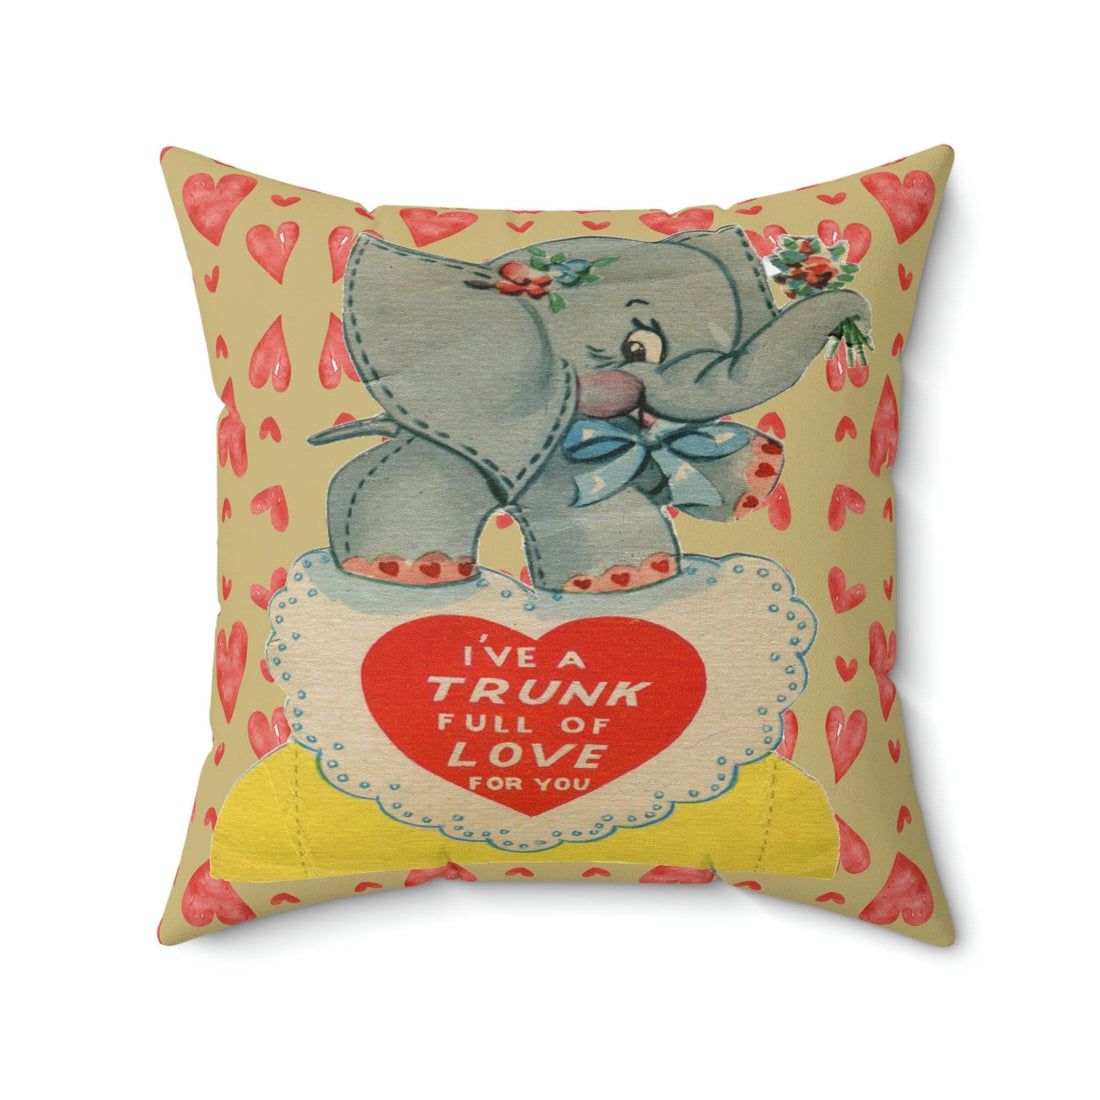 Kate McEnroe New York Retro Vintage Kitschy Elephant Valentine Throw Pillow CoverThrow Pillow Covers31167463583634447231